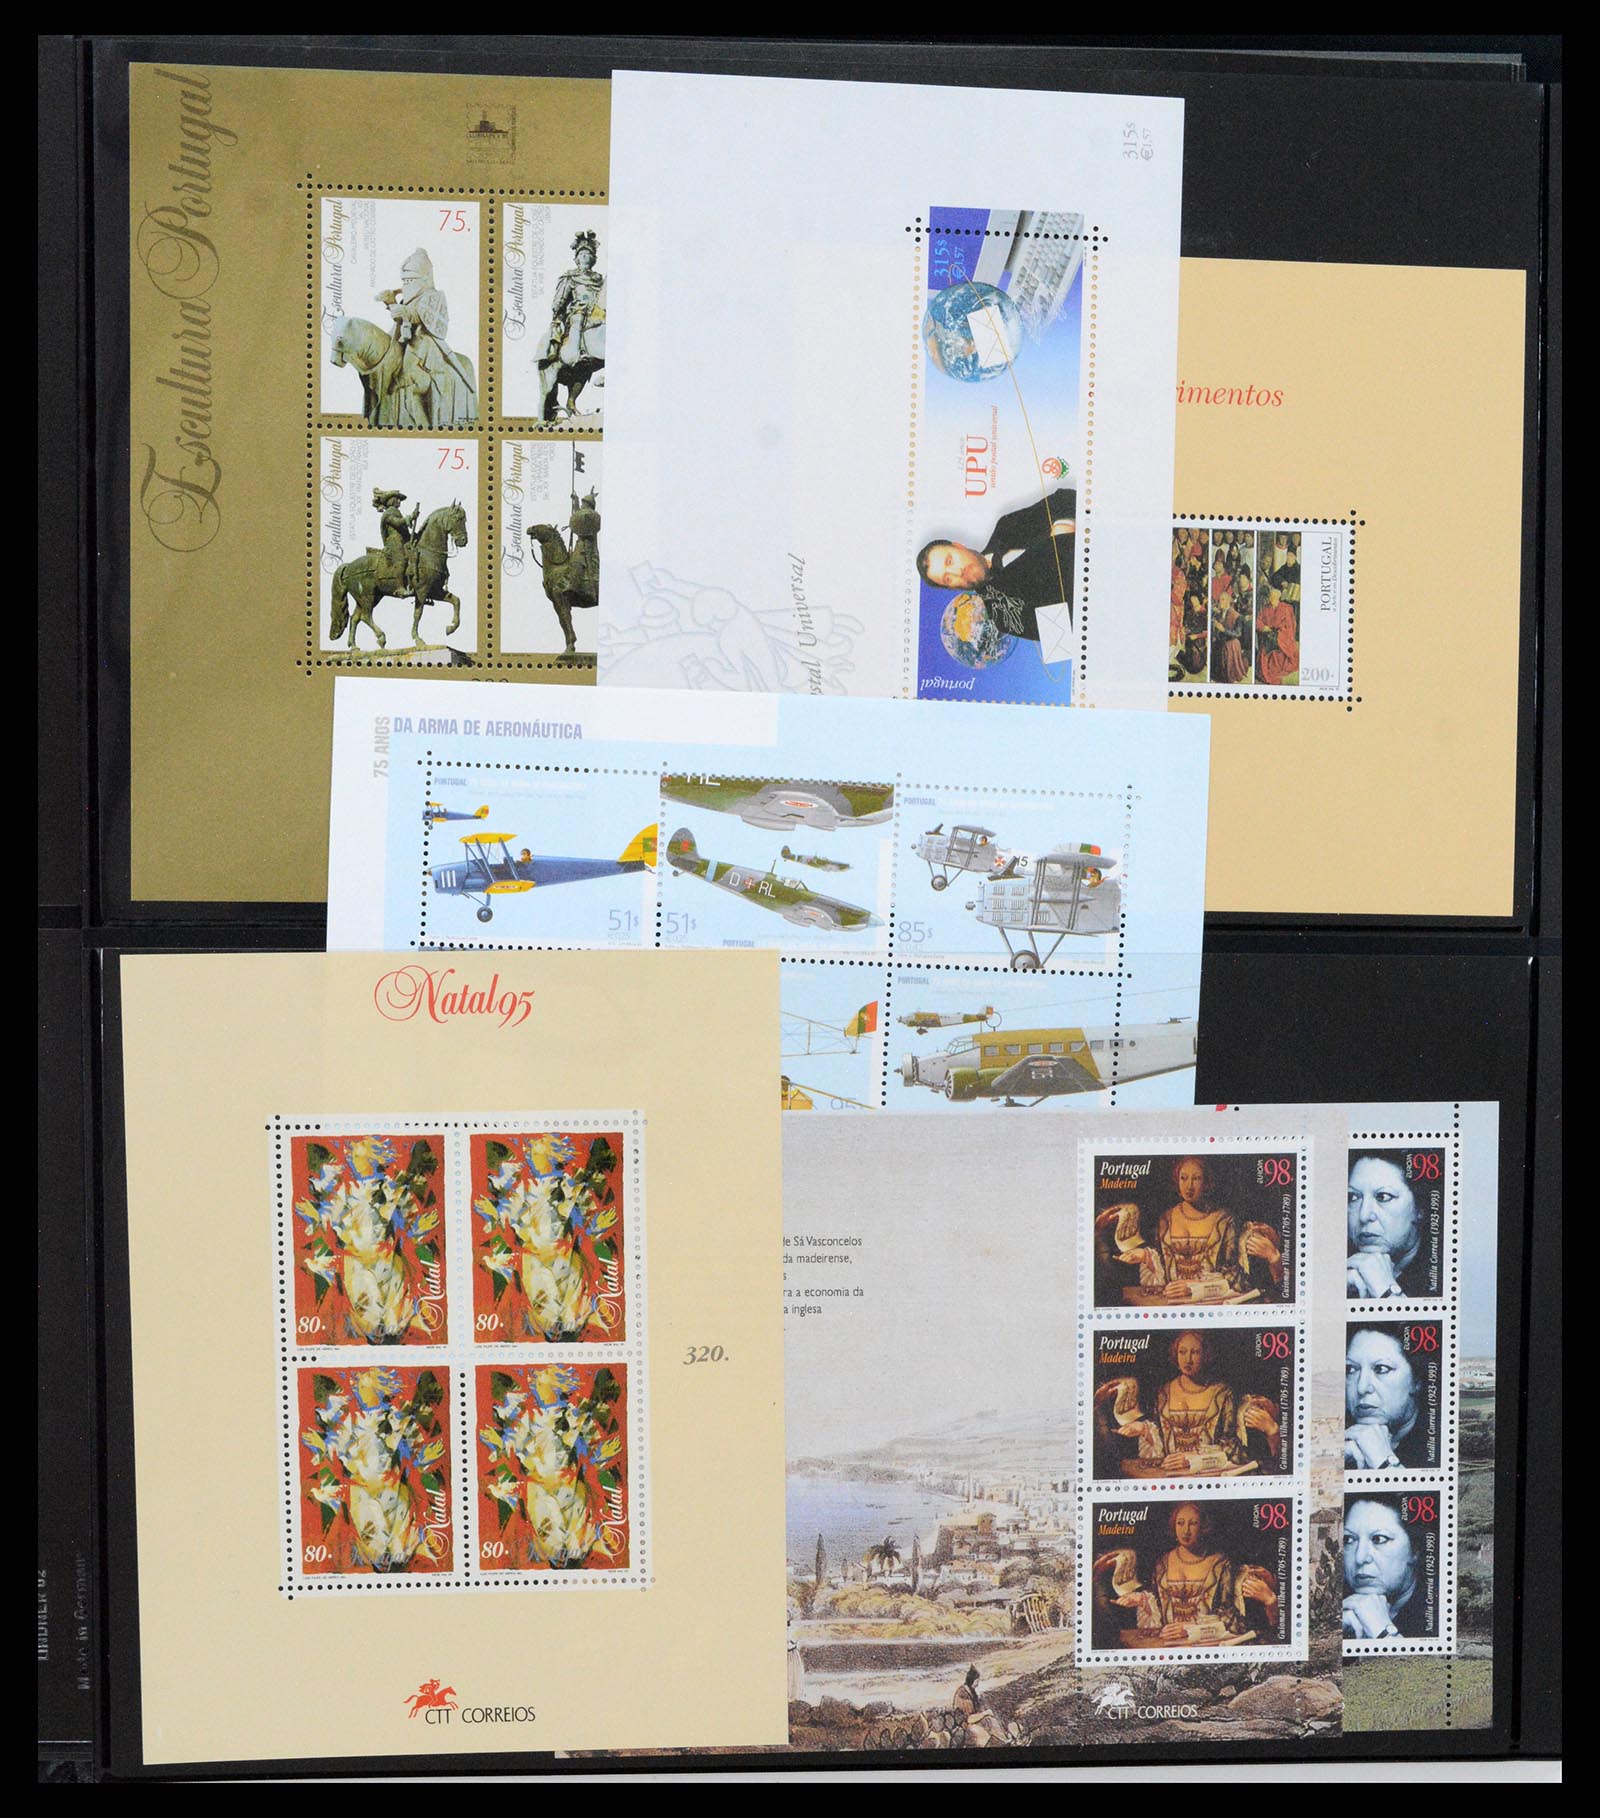 37345 343 - Stamp collection 37345 European countries souvenir sheets.